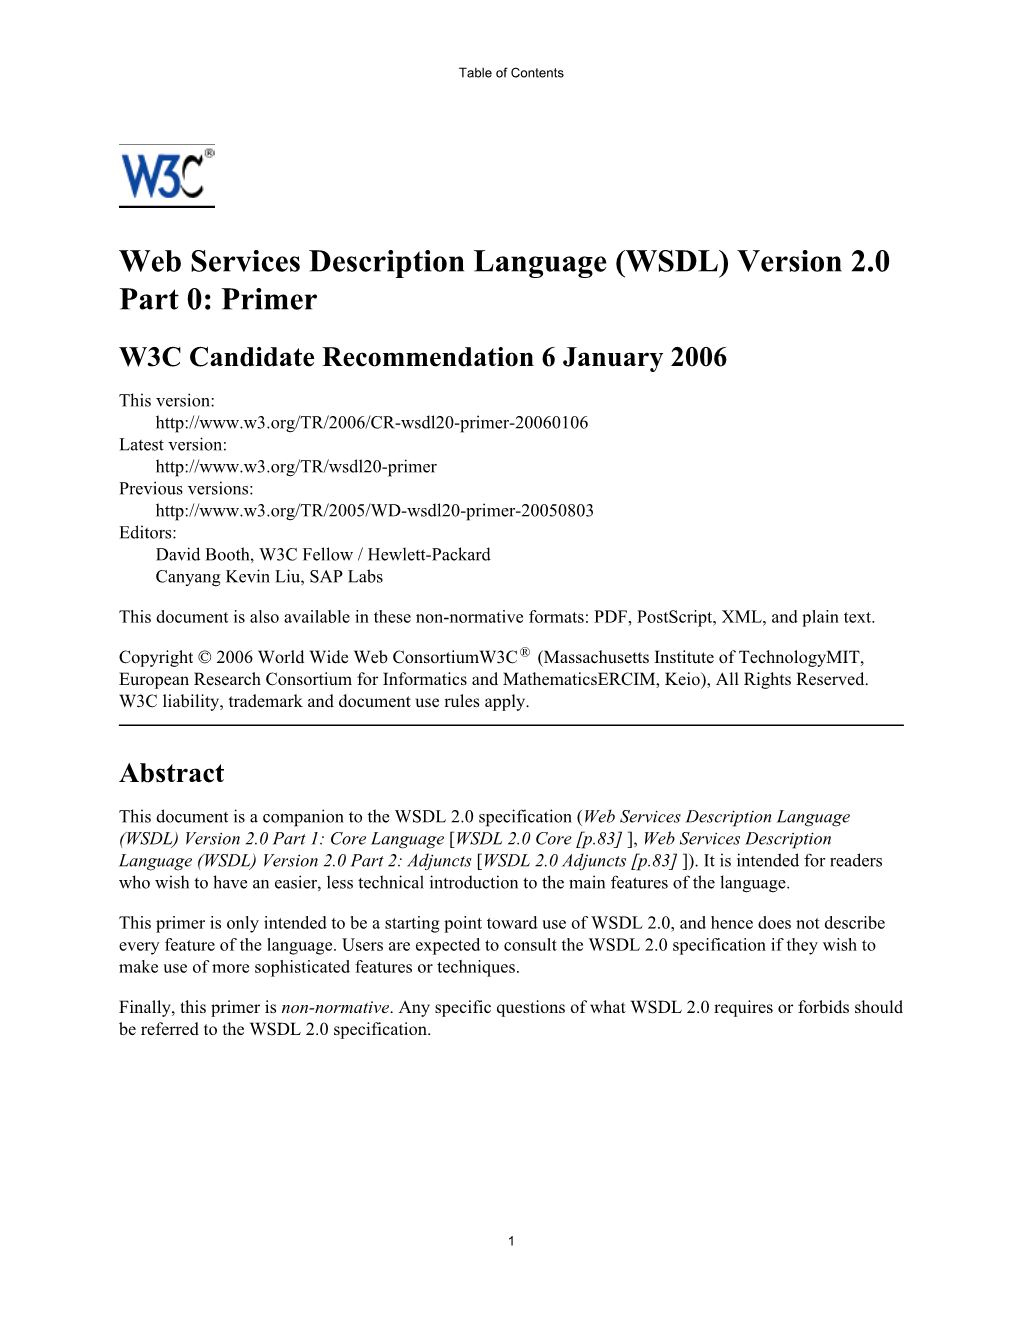 Web Services Description Language (WSDL) Version 2.0 Part 0: Primer W3C Candidate Recommendation 6 January 2006